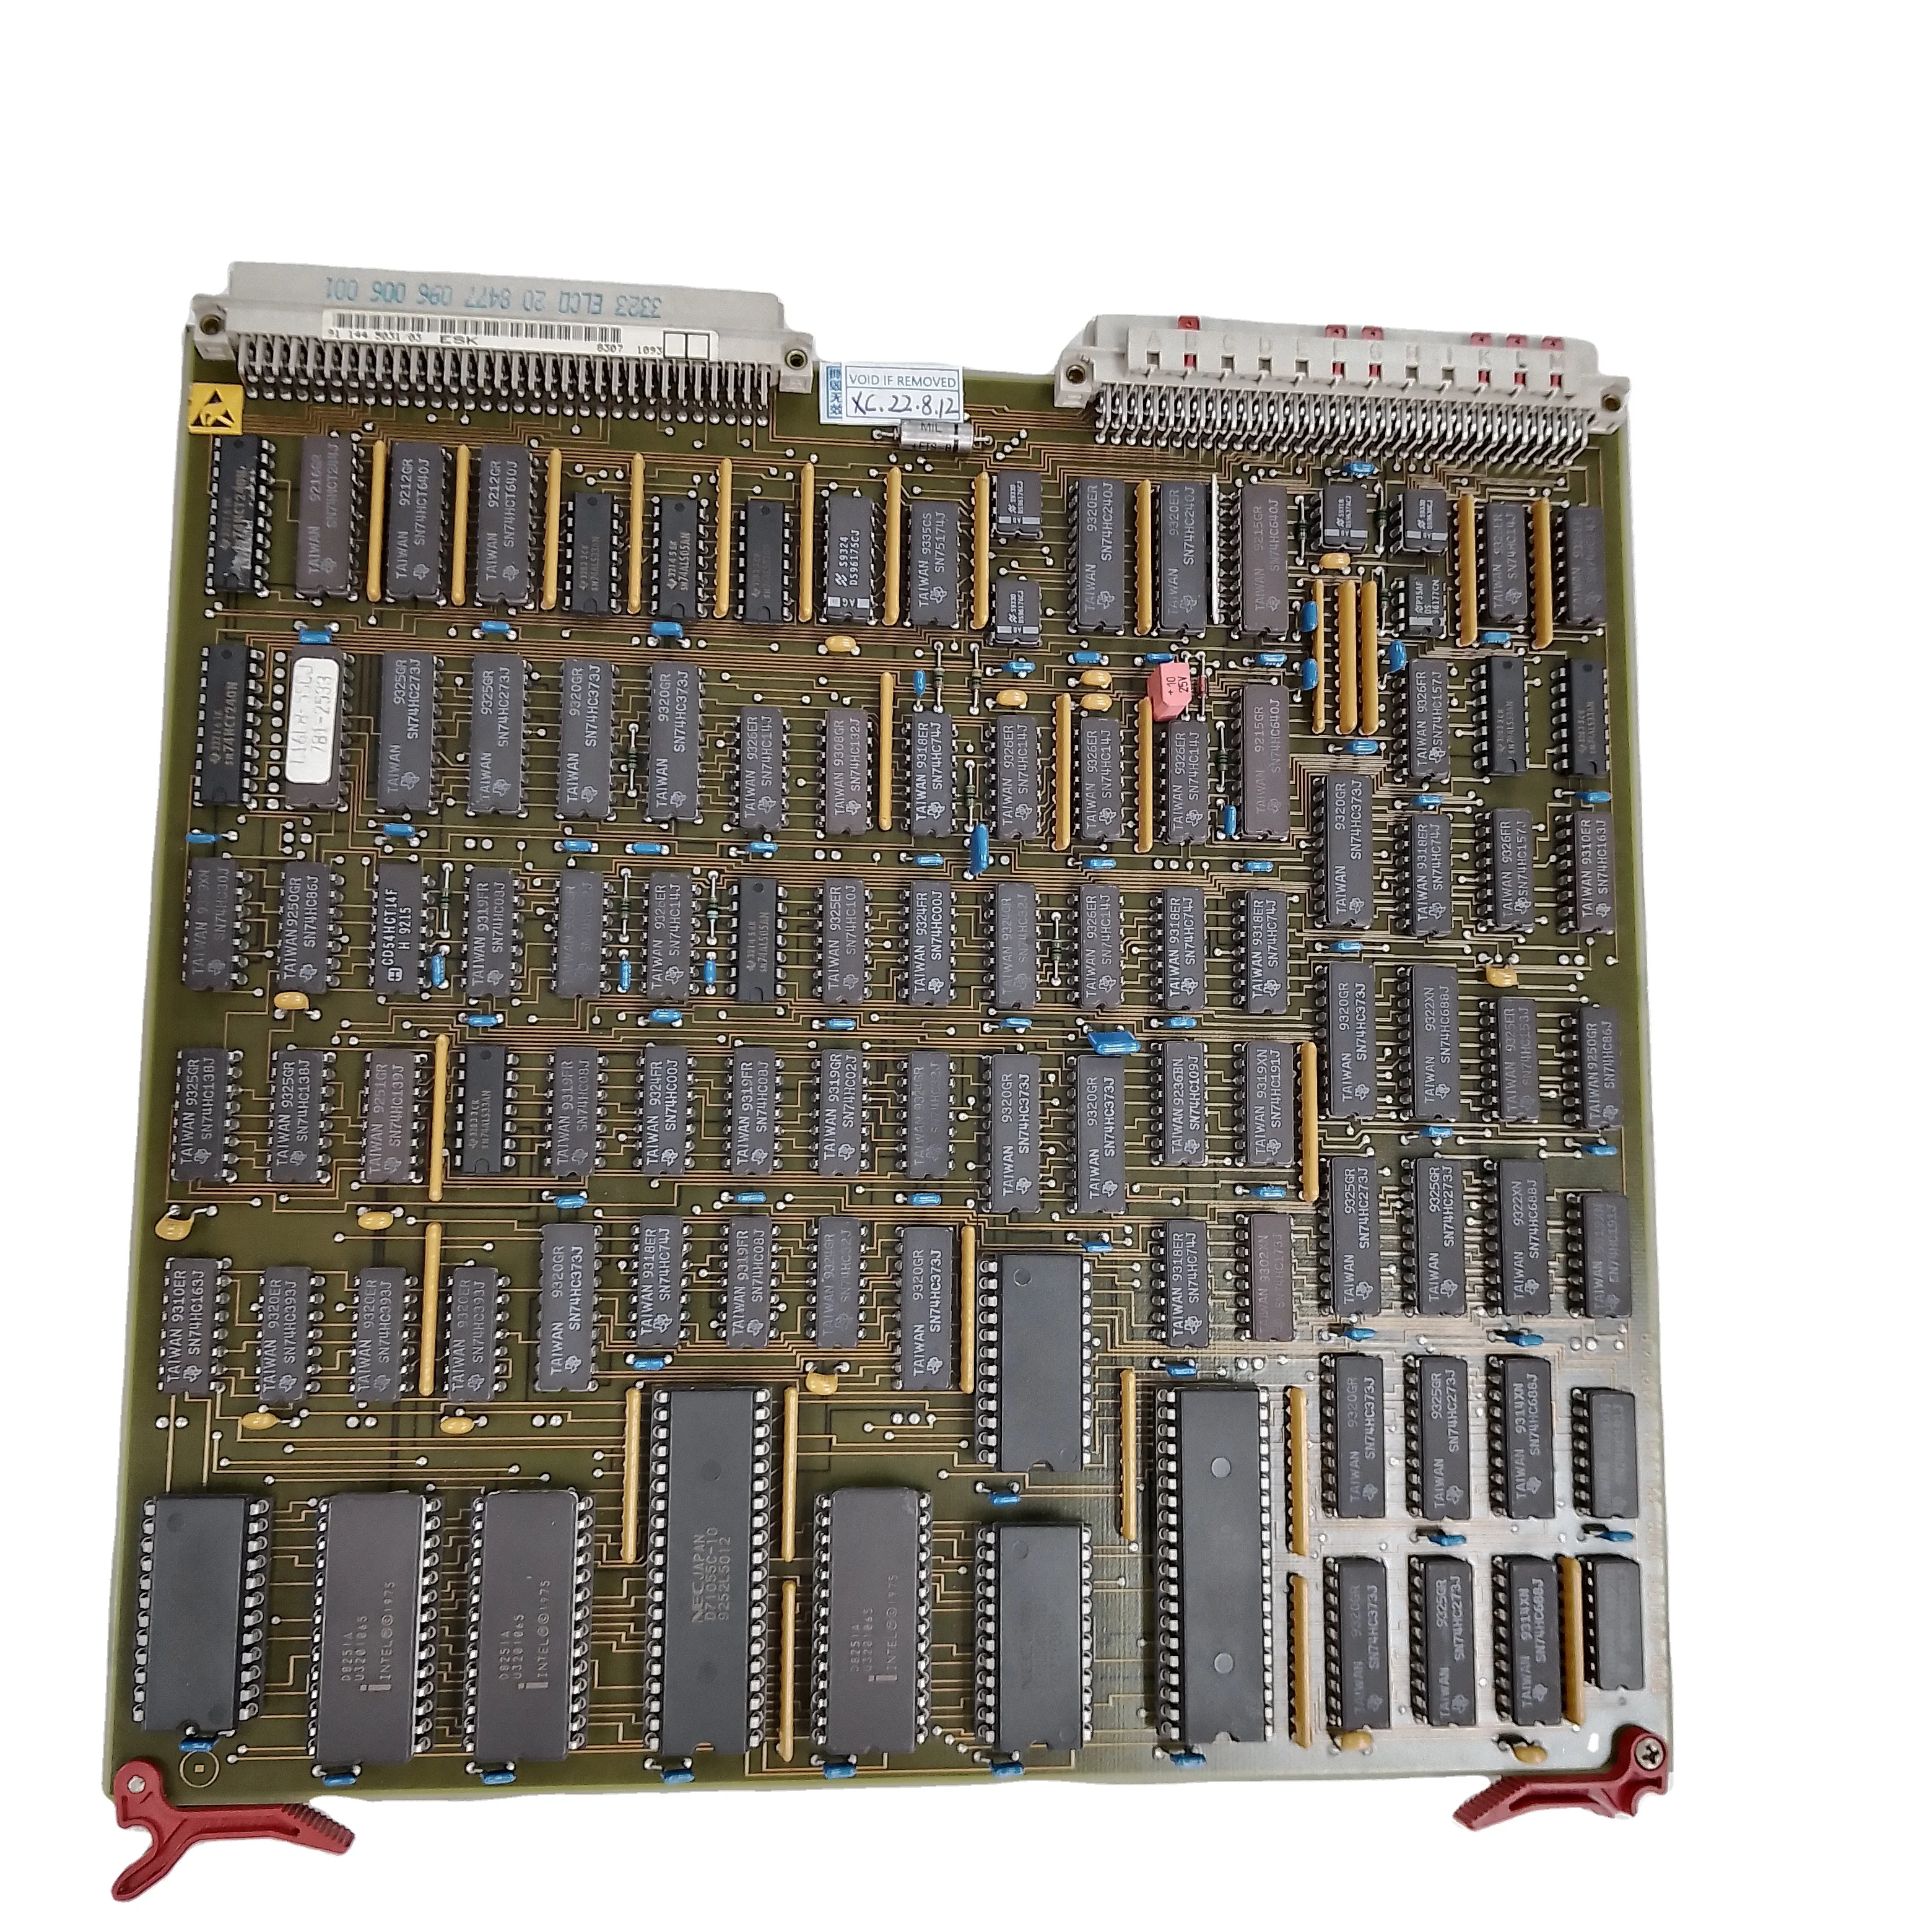 

Printed Circuit Board ESK 91.144.5031 00.781.2405 Circuit Board For SM74 CD102 SM102 Computer Plug in Unit SM74 Control Box